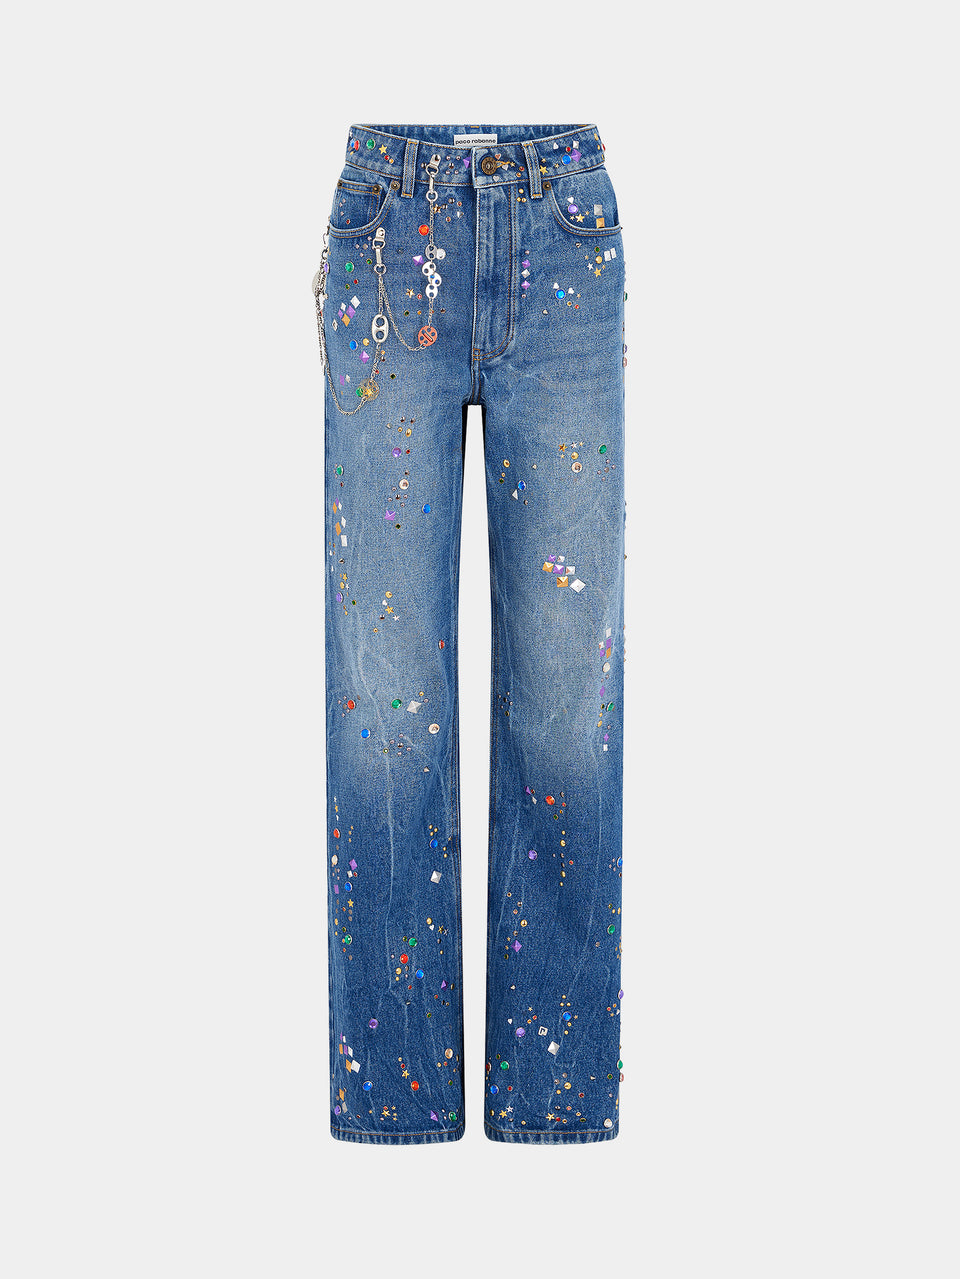 Denim jeans with multicolored rhinestones